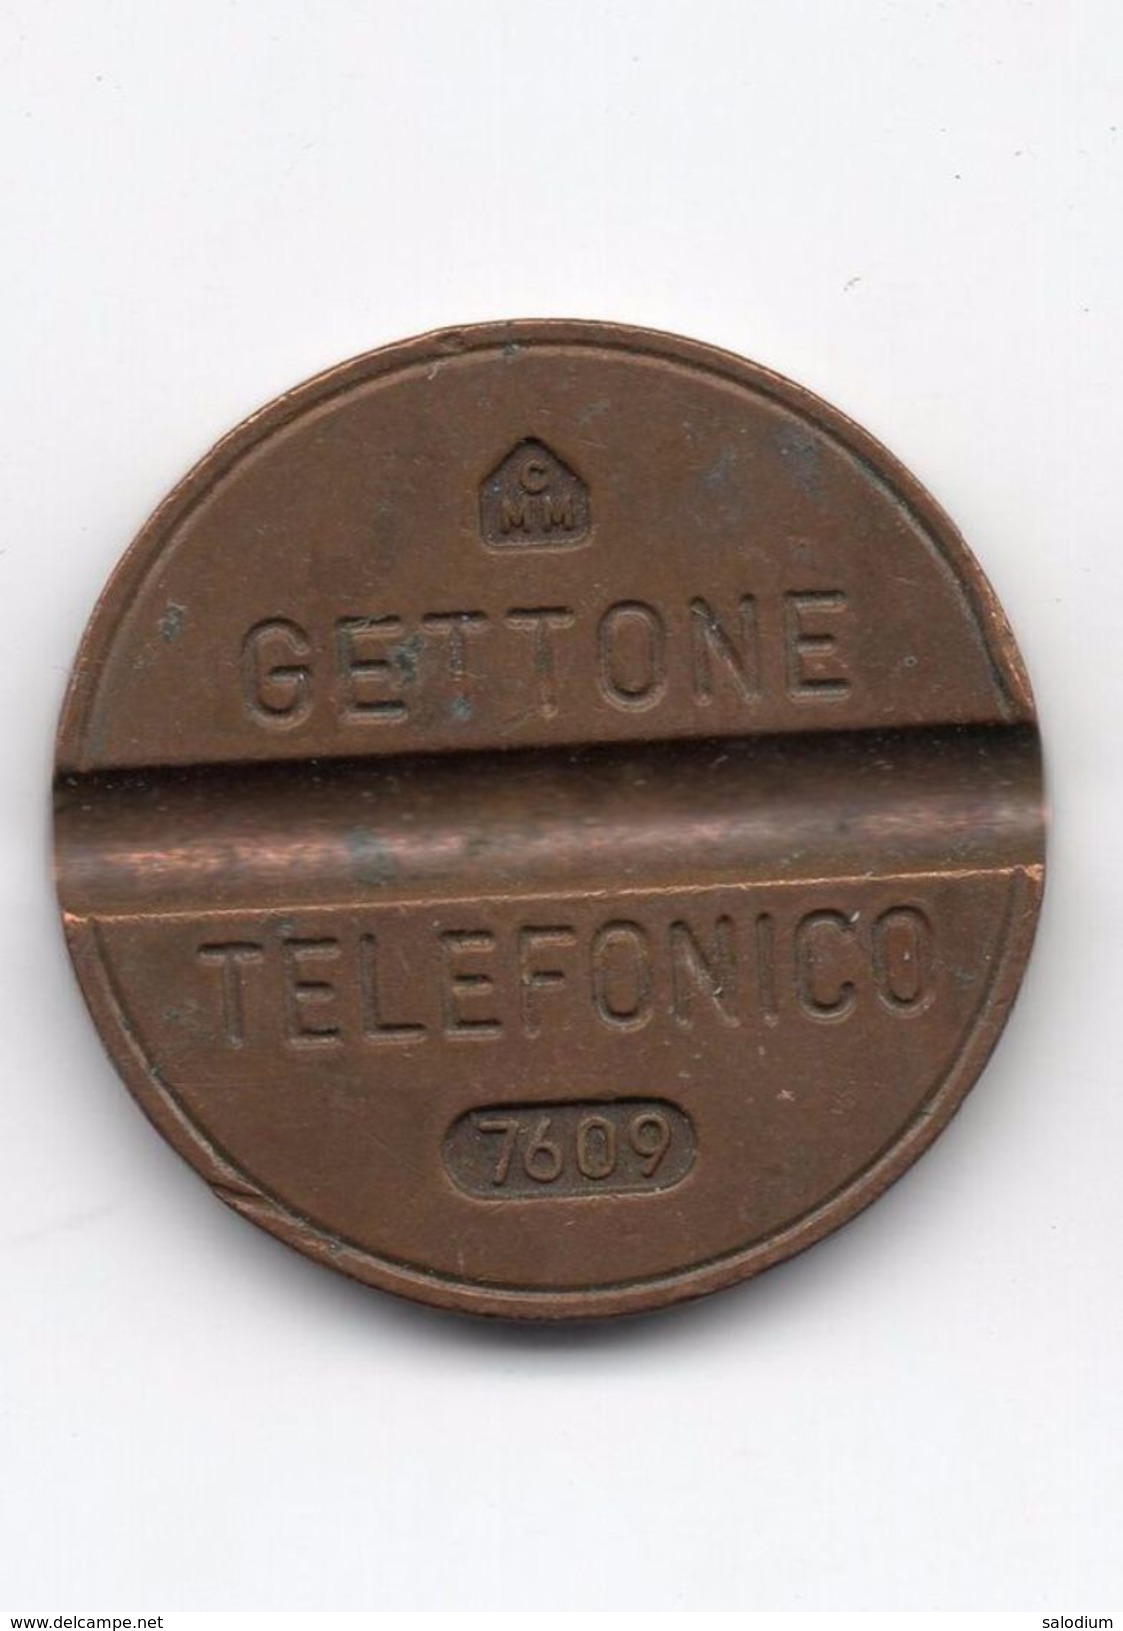 Gettone Telefonico 7609 Token Telephone - (Id-670) - Professionnels/De Société